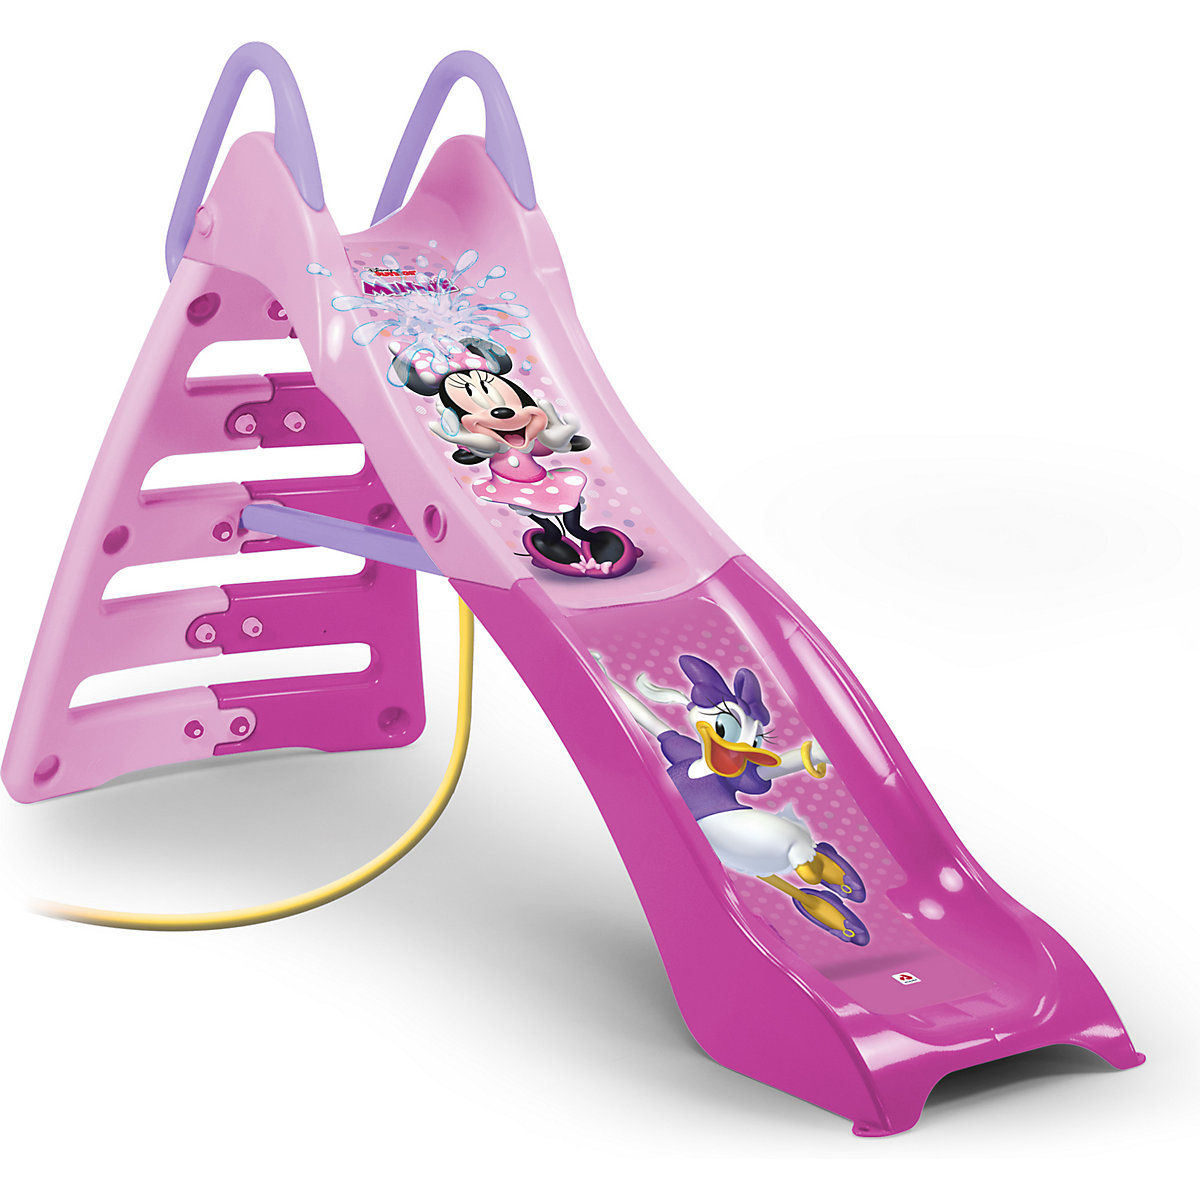 Kinder Wasserrutsche Disney Minnie Maus